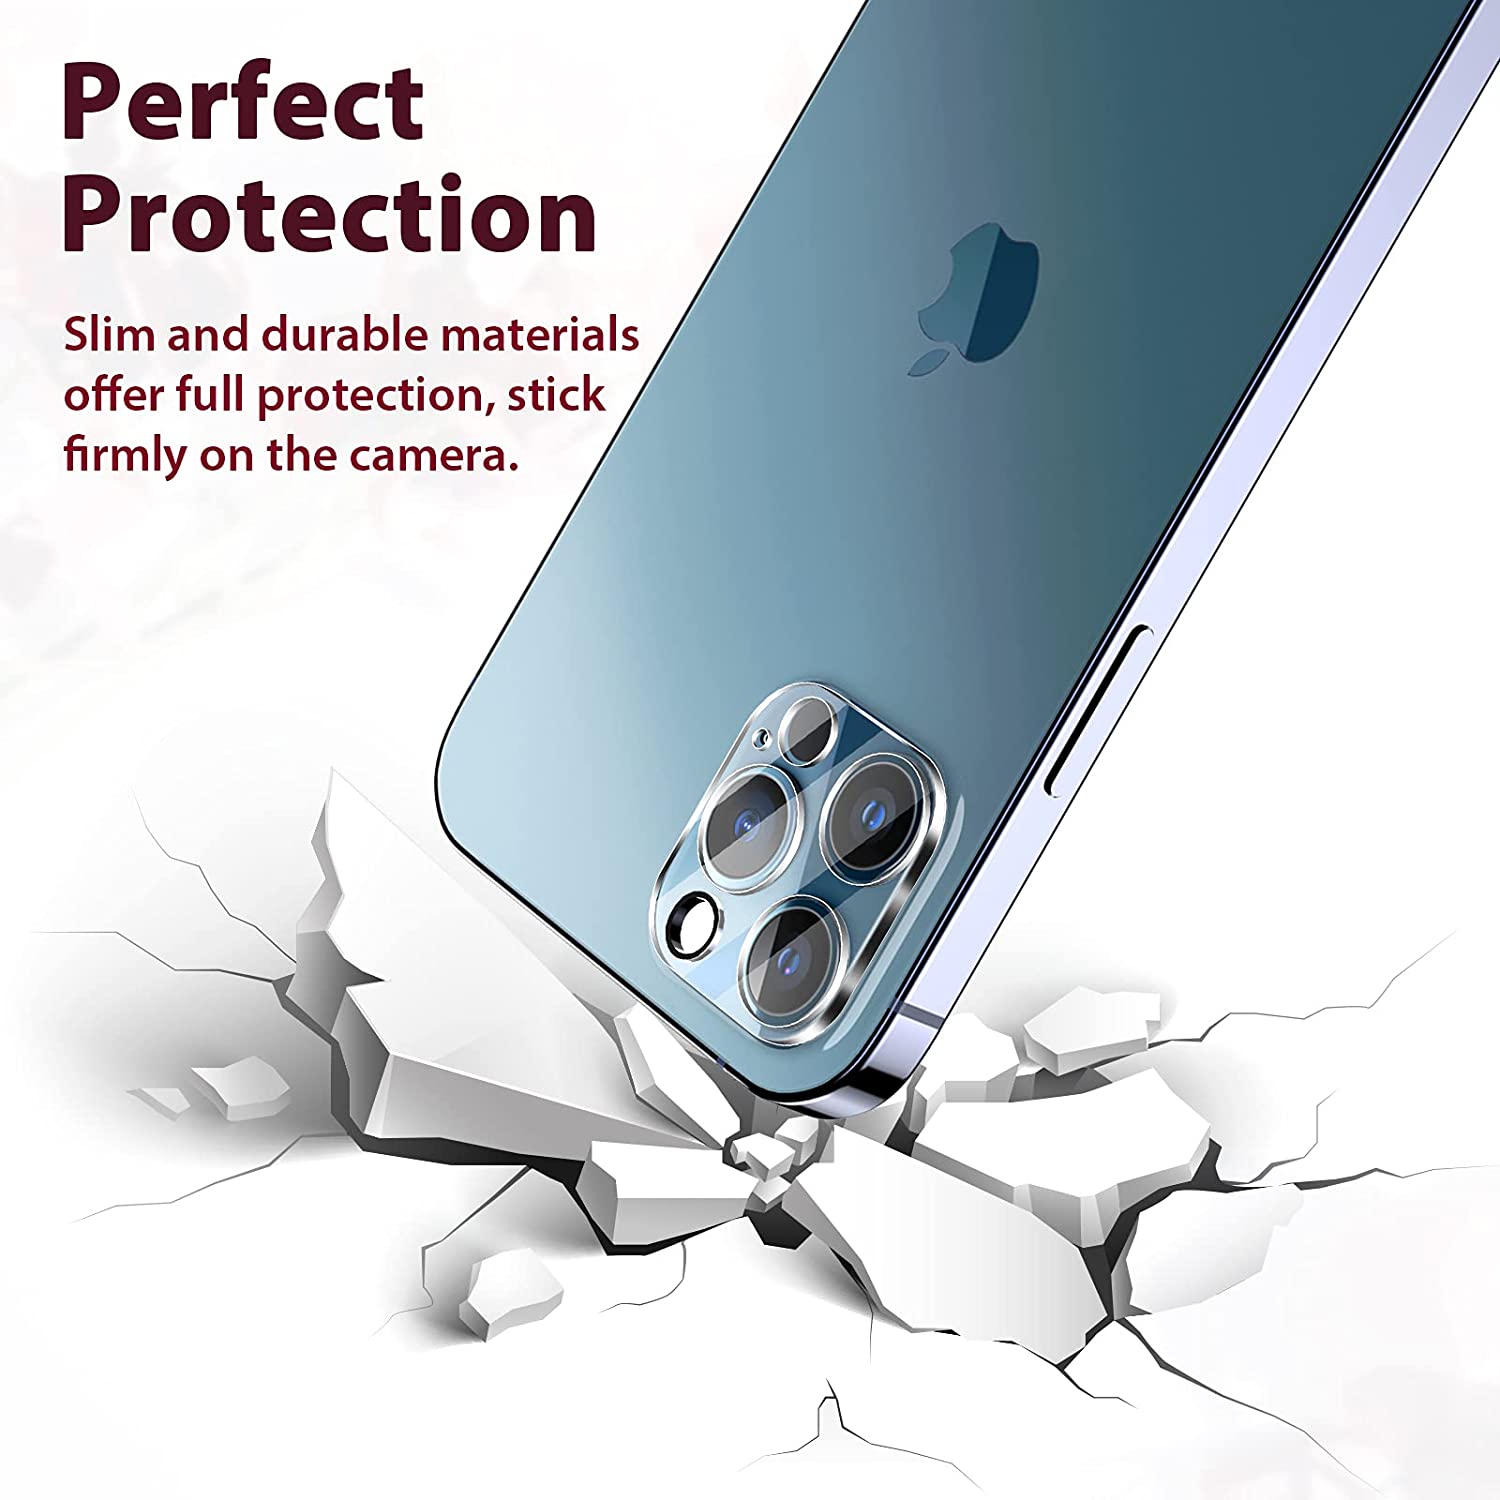 Protector Cristal Templado COOL para Cámara de iPhone 13 / 13 mini - Cool  Accesorios